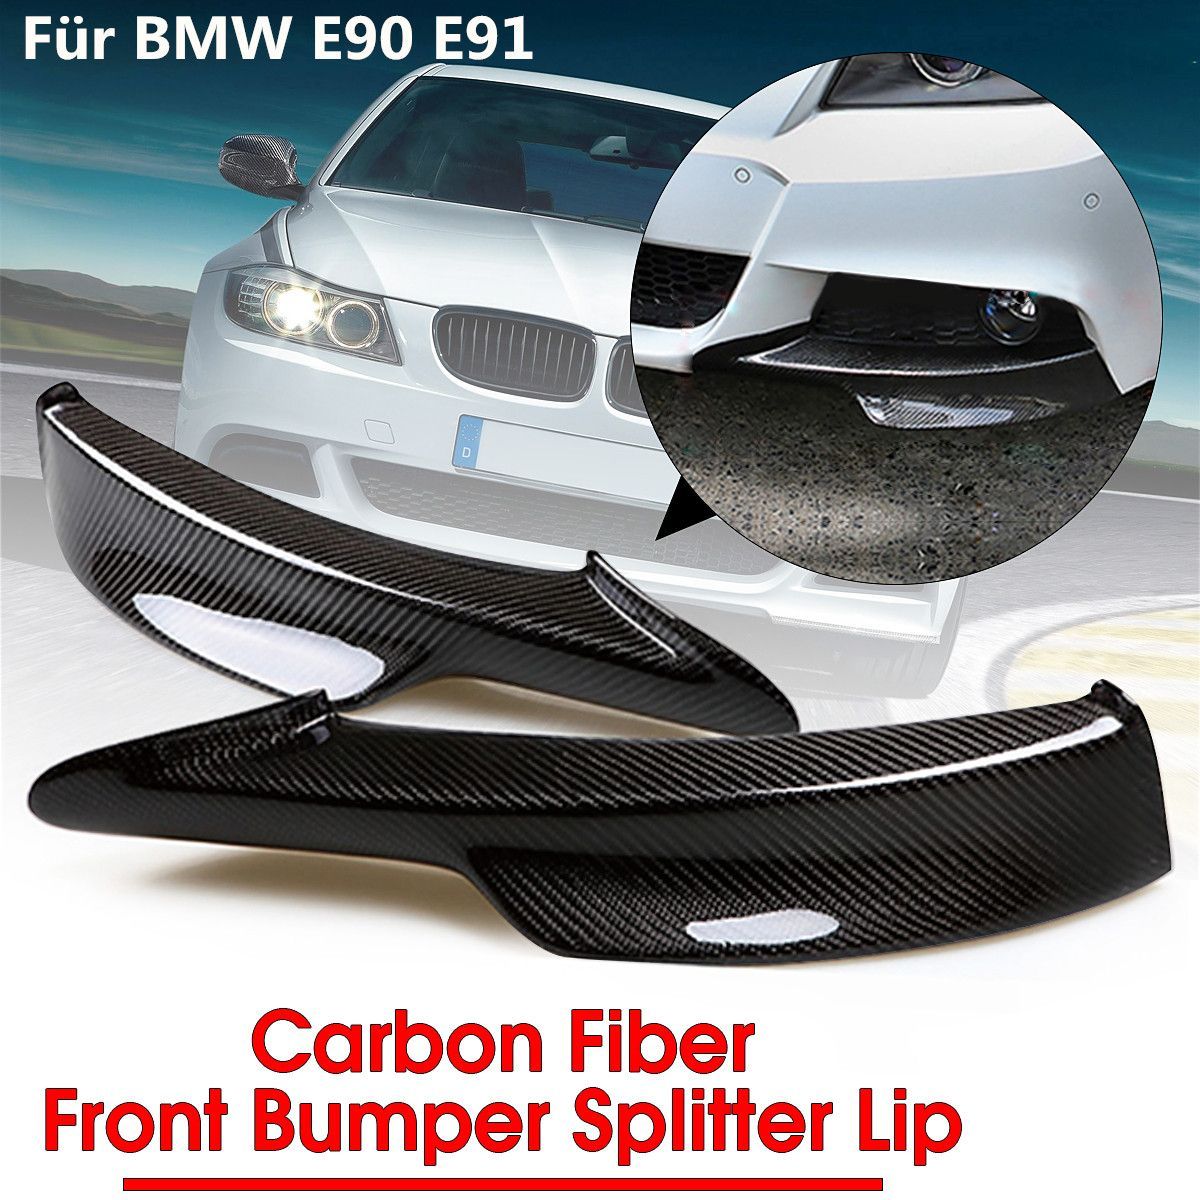 2PCS-Carbon-Fiber-Board-Front-Bumper-Splitter-Lip-for-BMW-E90-335i-328i-LCI-M-Tech-Bumper-1541910